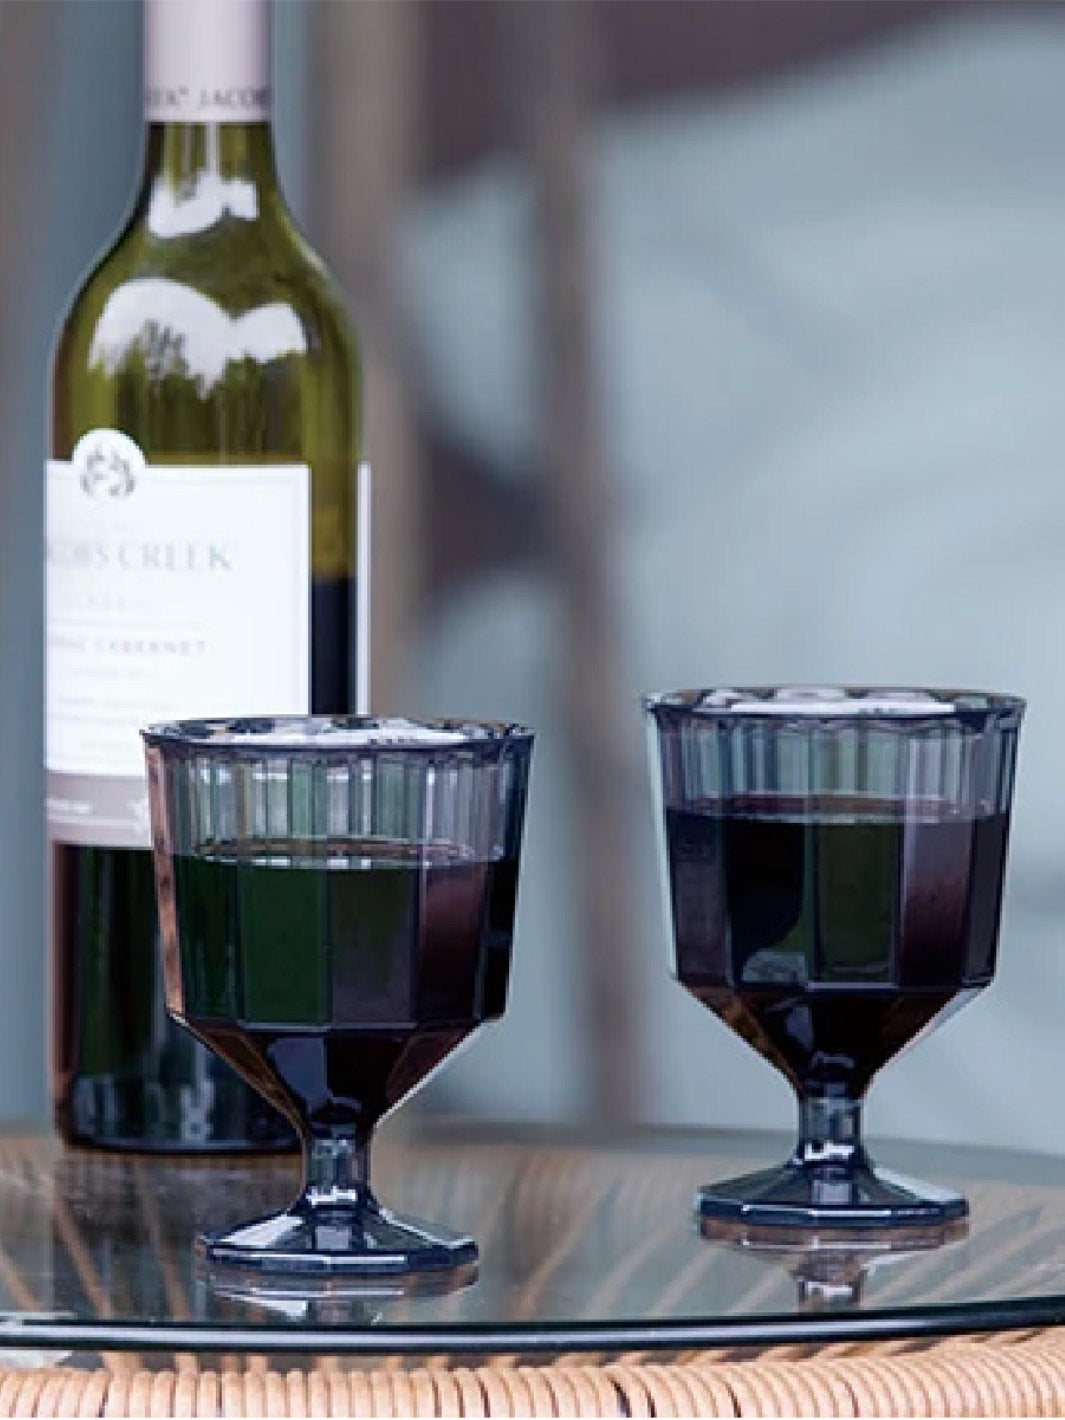 KINTO ALFRESCO Wine Glass (250ml/8.5oz)